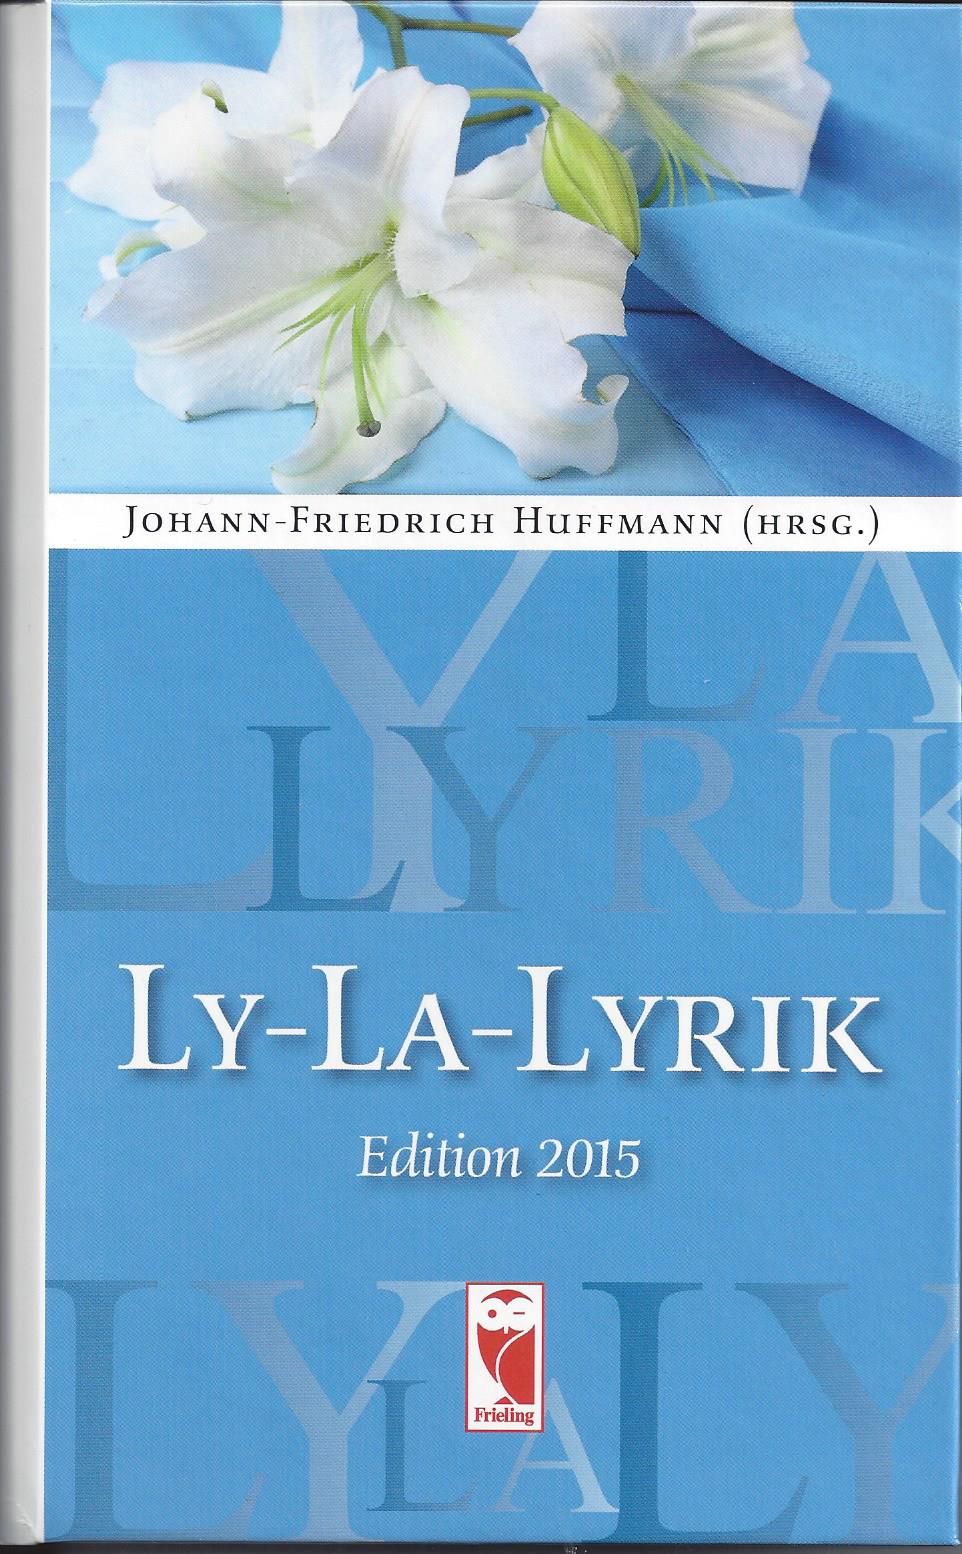 Ly-La-Lyrik, 2015